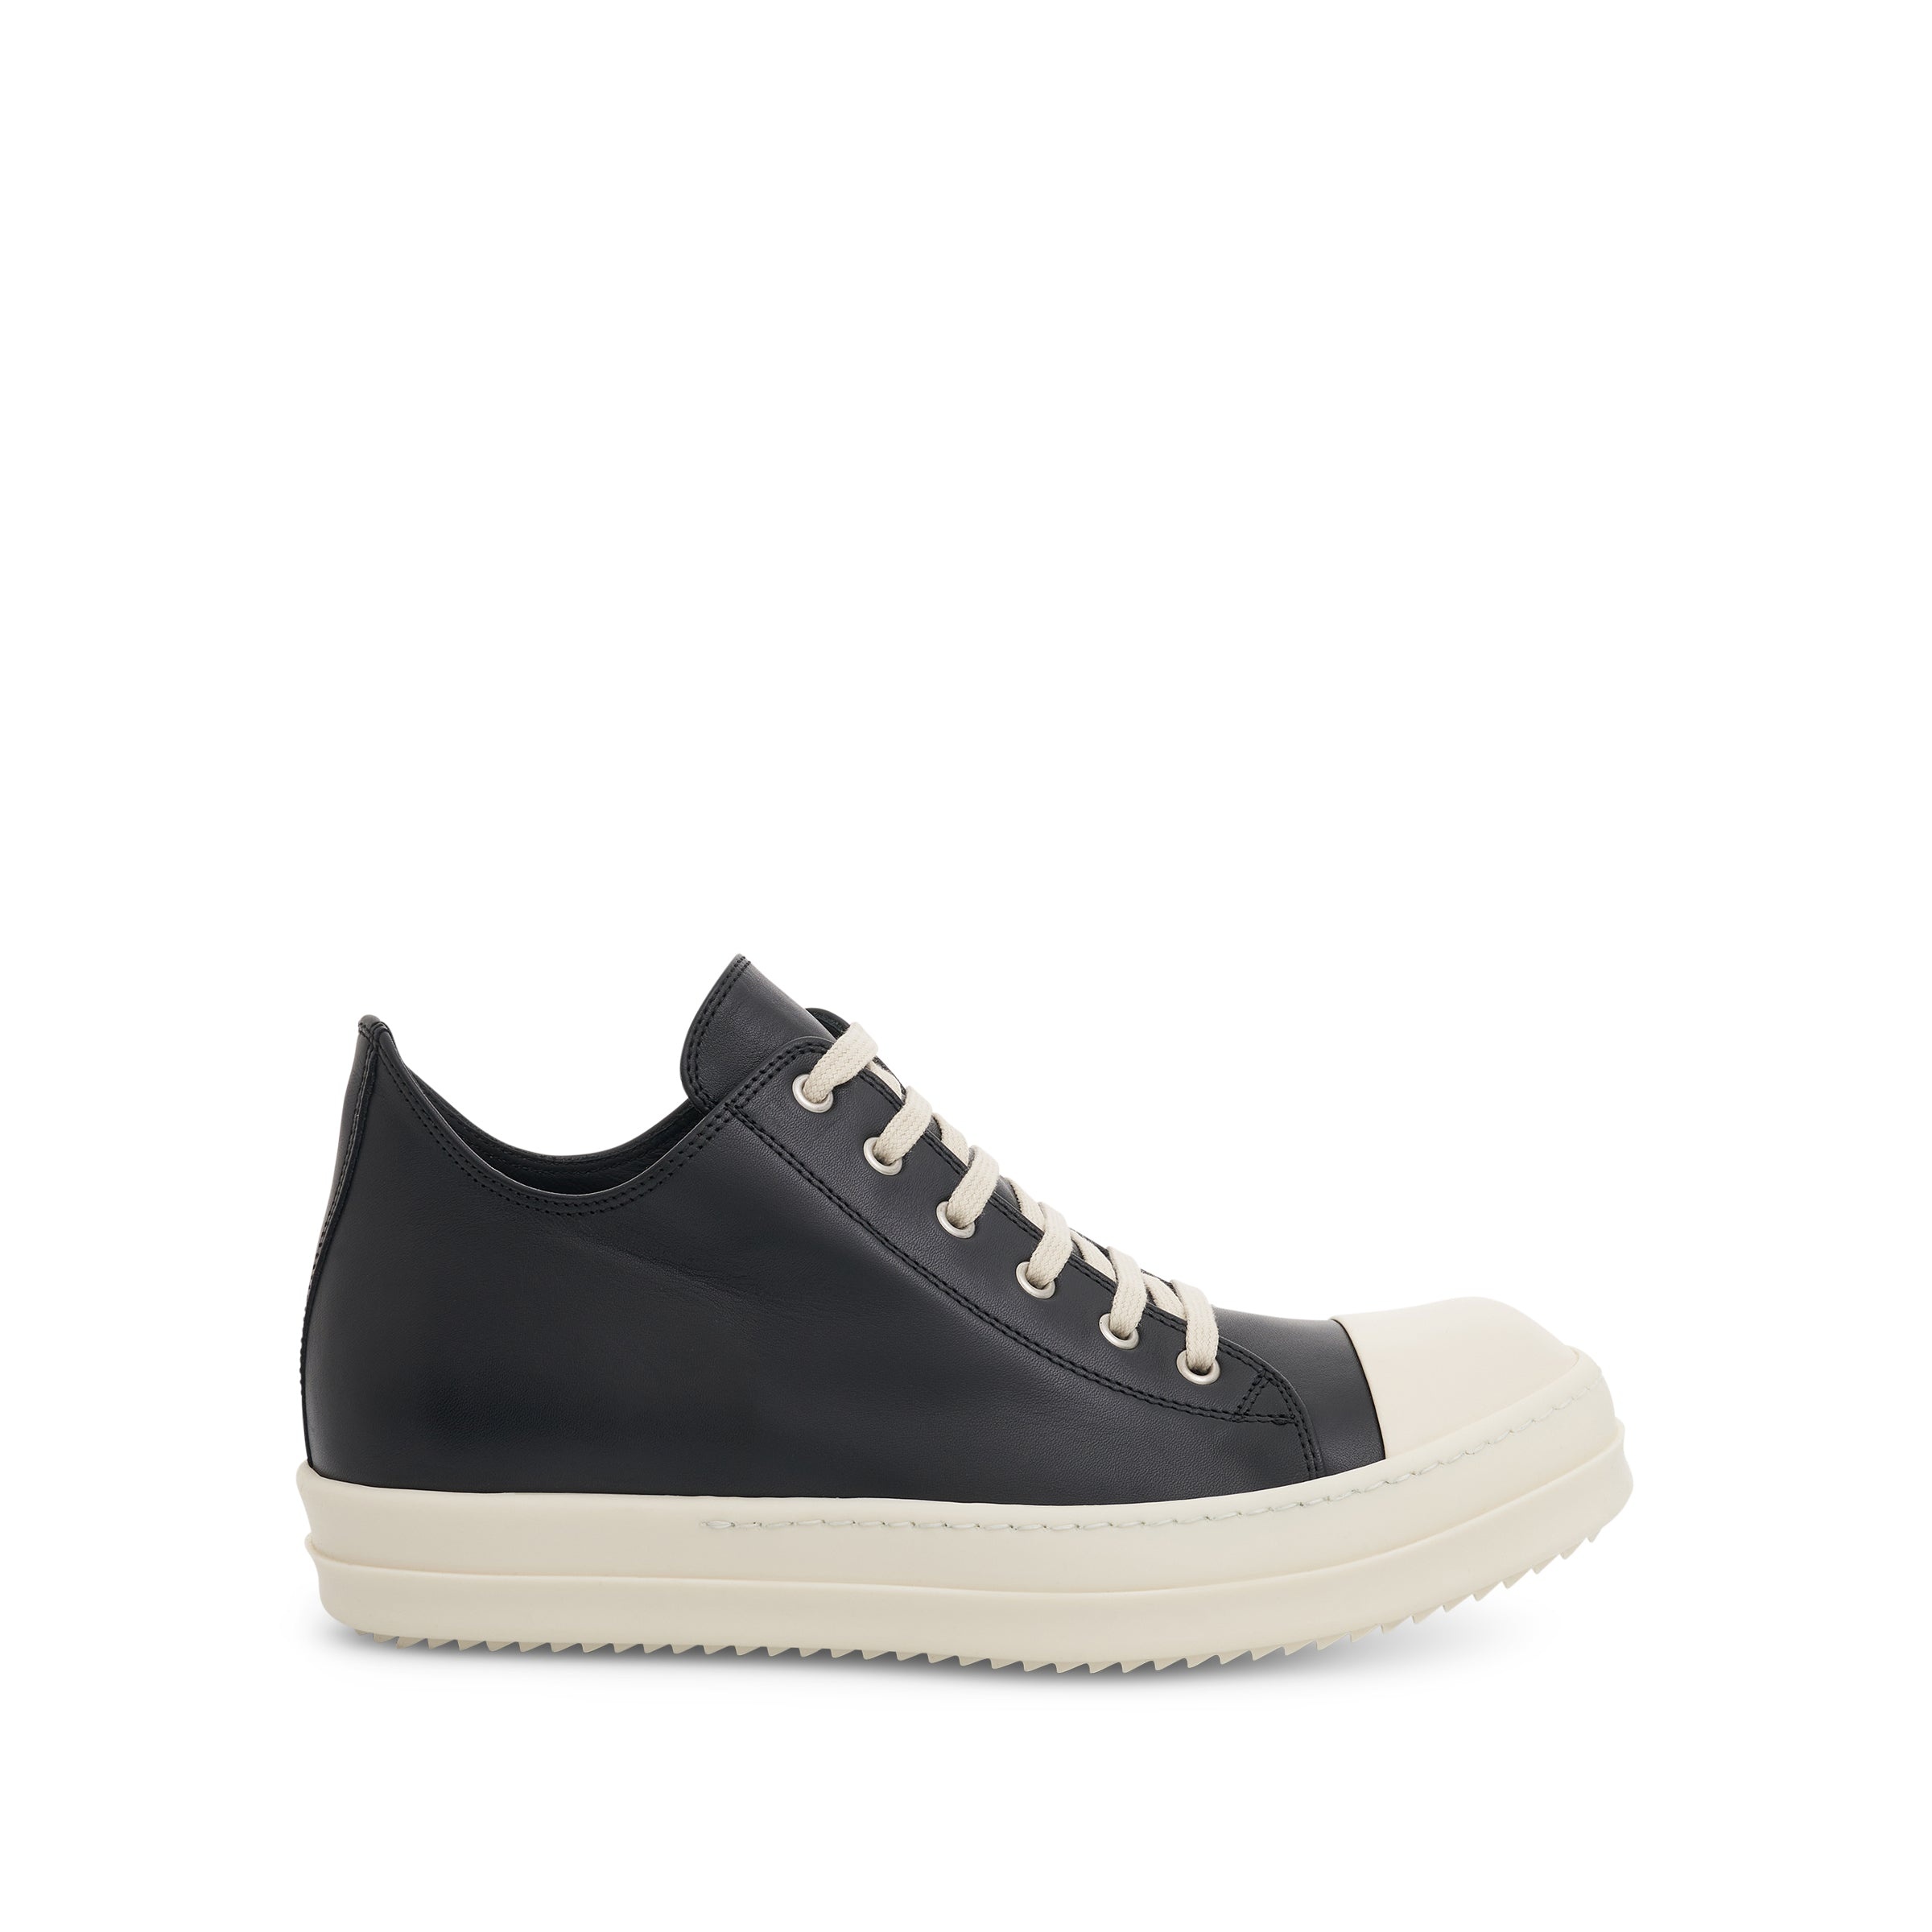 EDFU Low Leather Sneaker in Black/Milk - 1